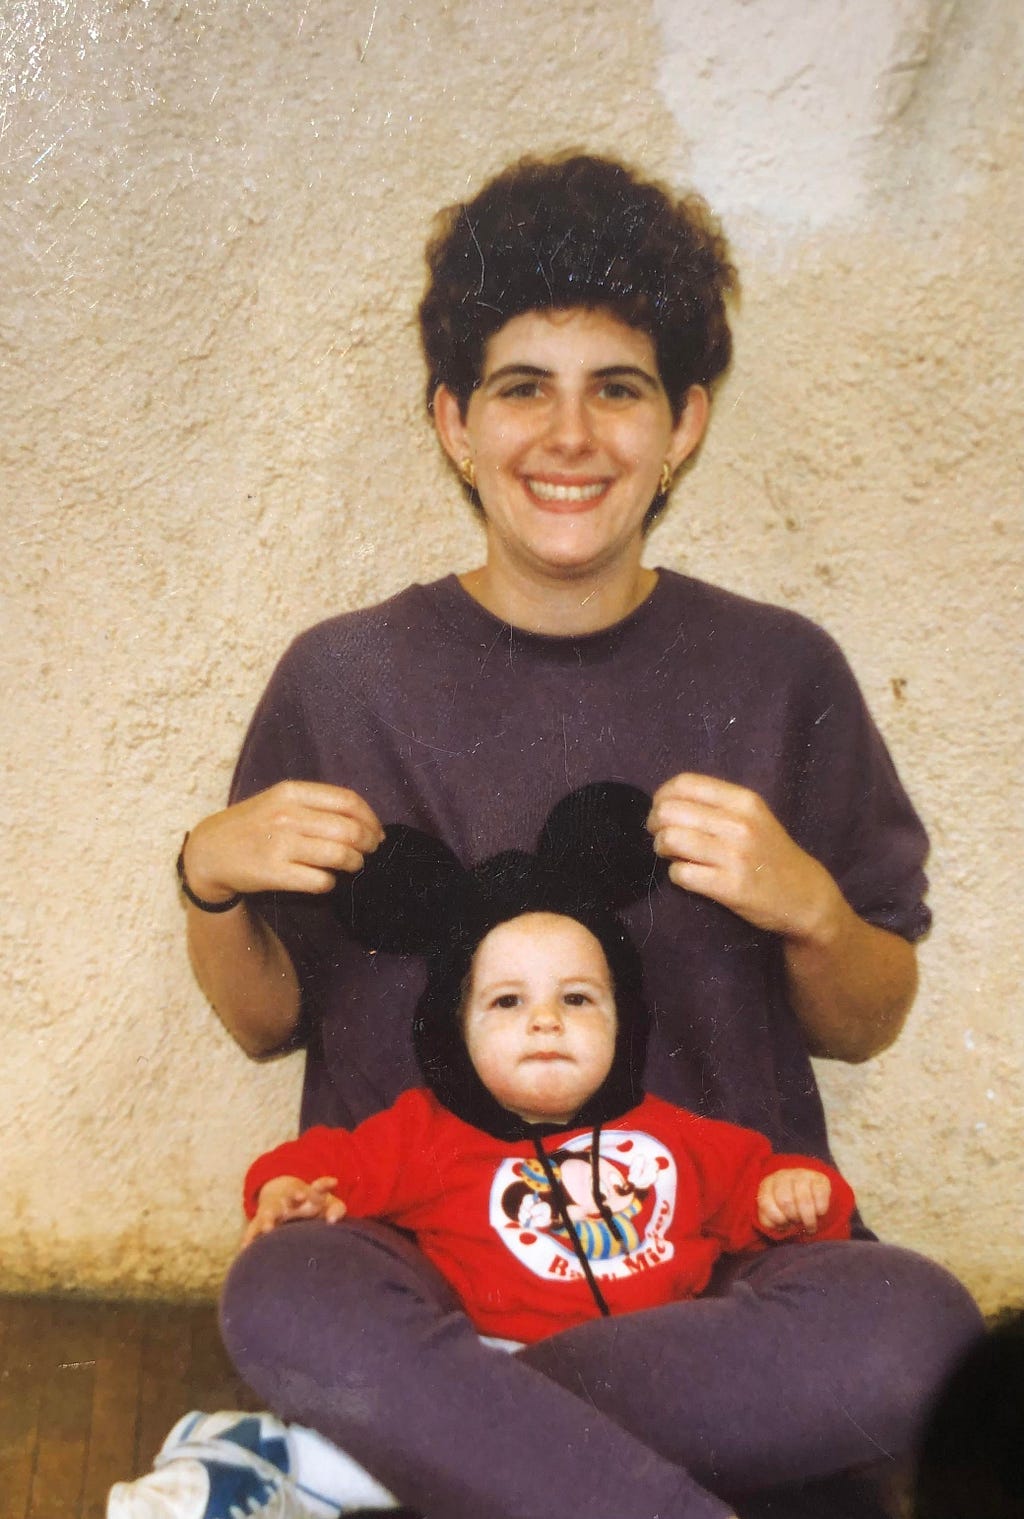 Me and my mom, circa 1990